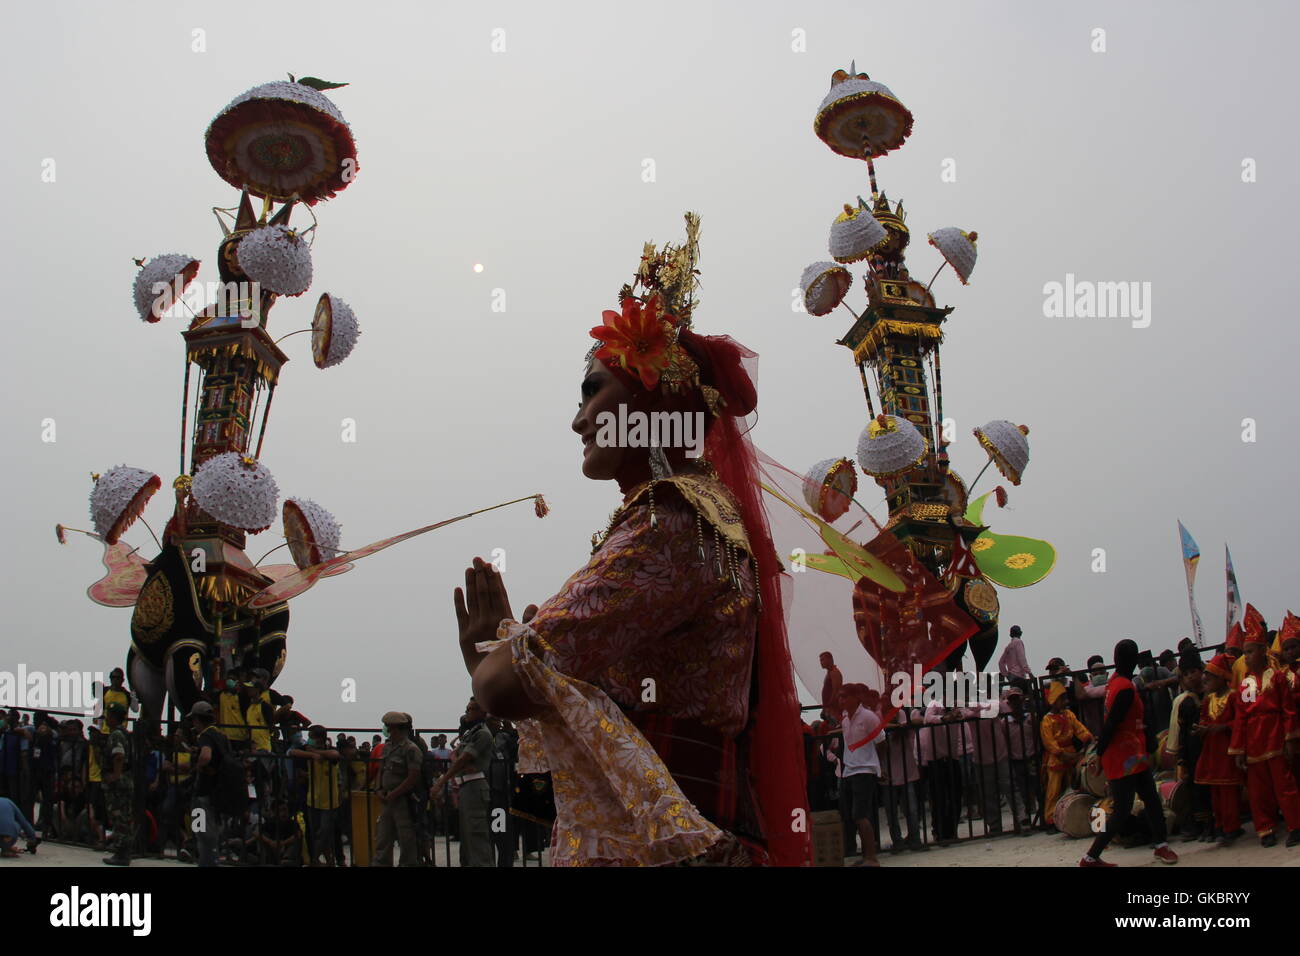 Tabuik festiavl in Pariaman, West Sumatra; Indonesia. Photo by Yuli Seperi/Alamy Stock Photo